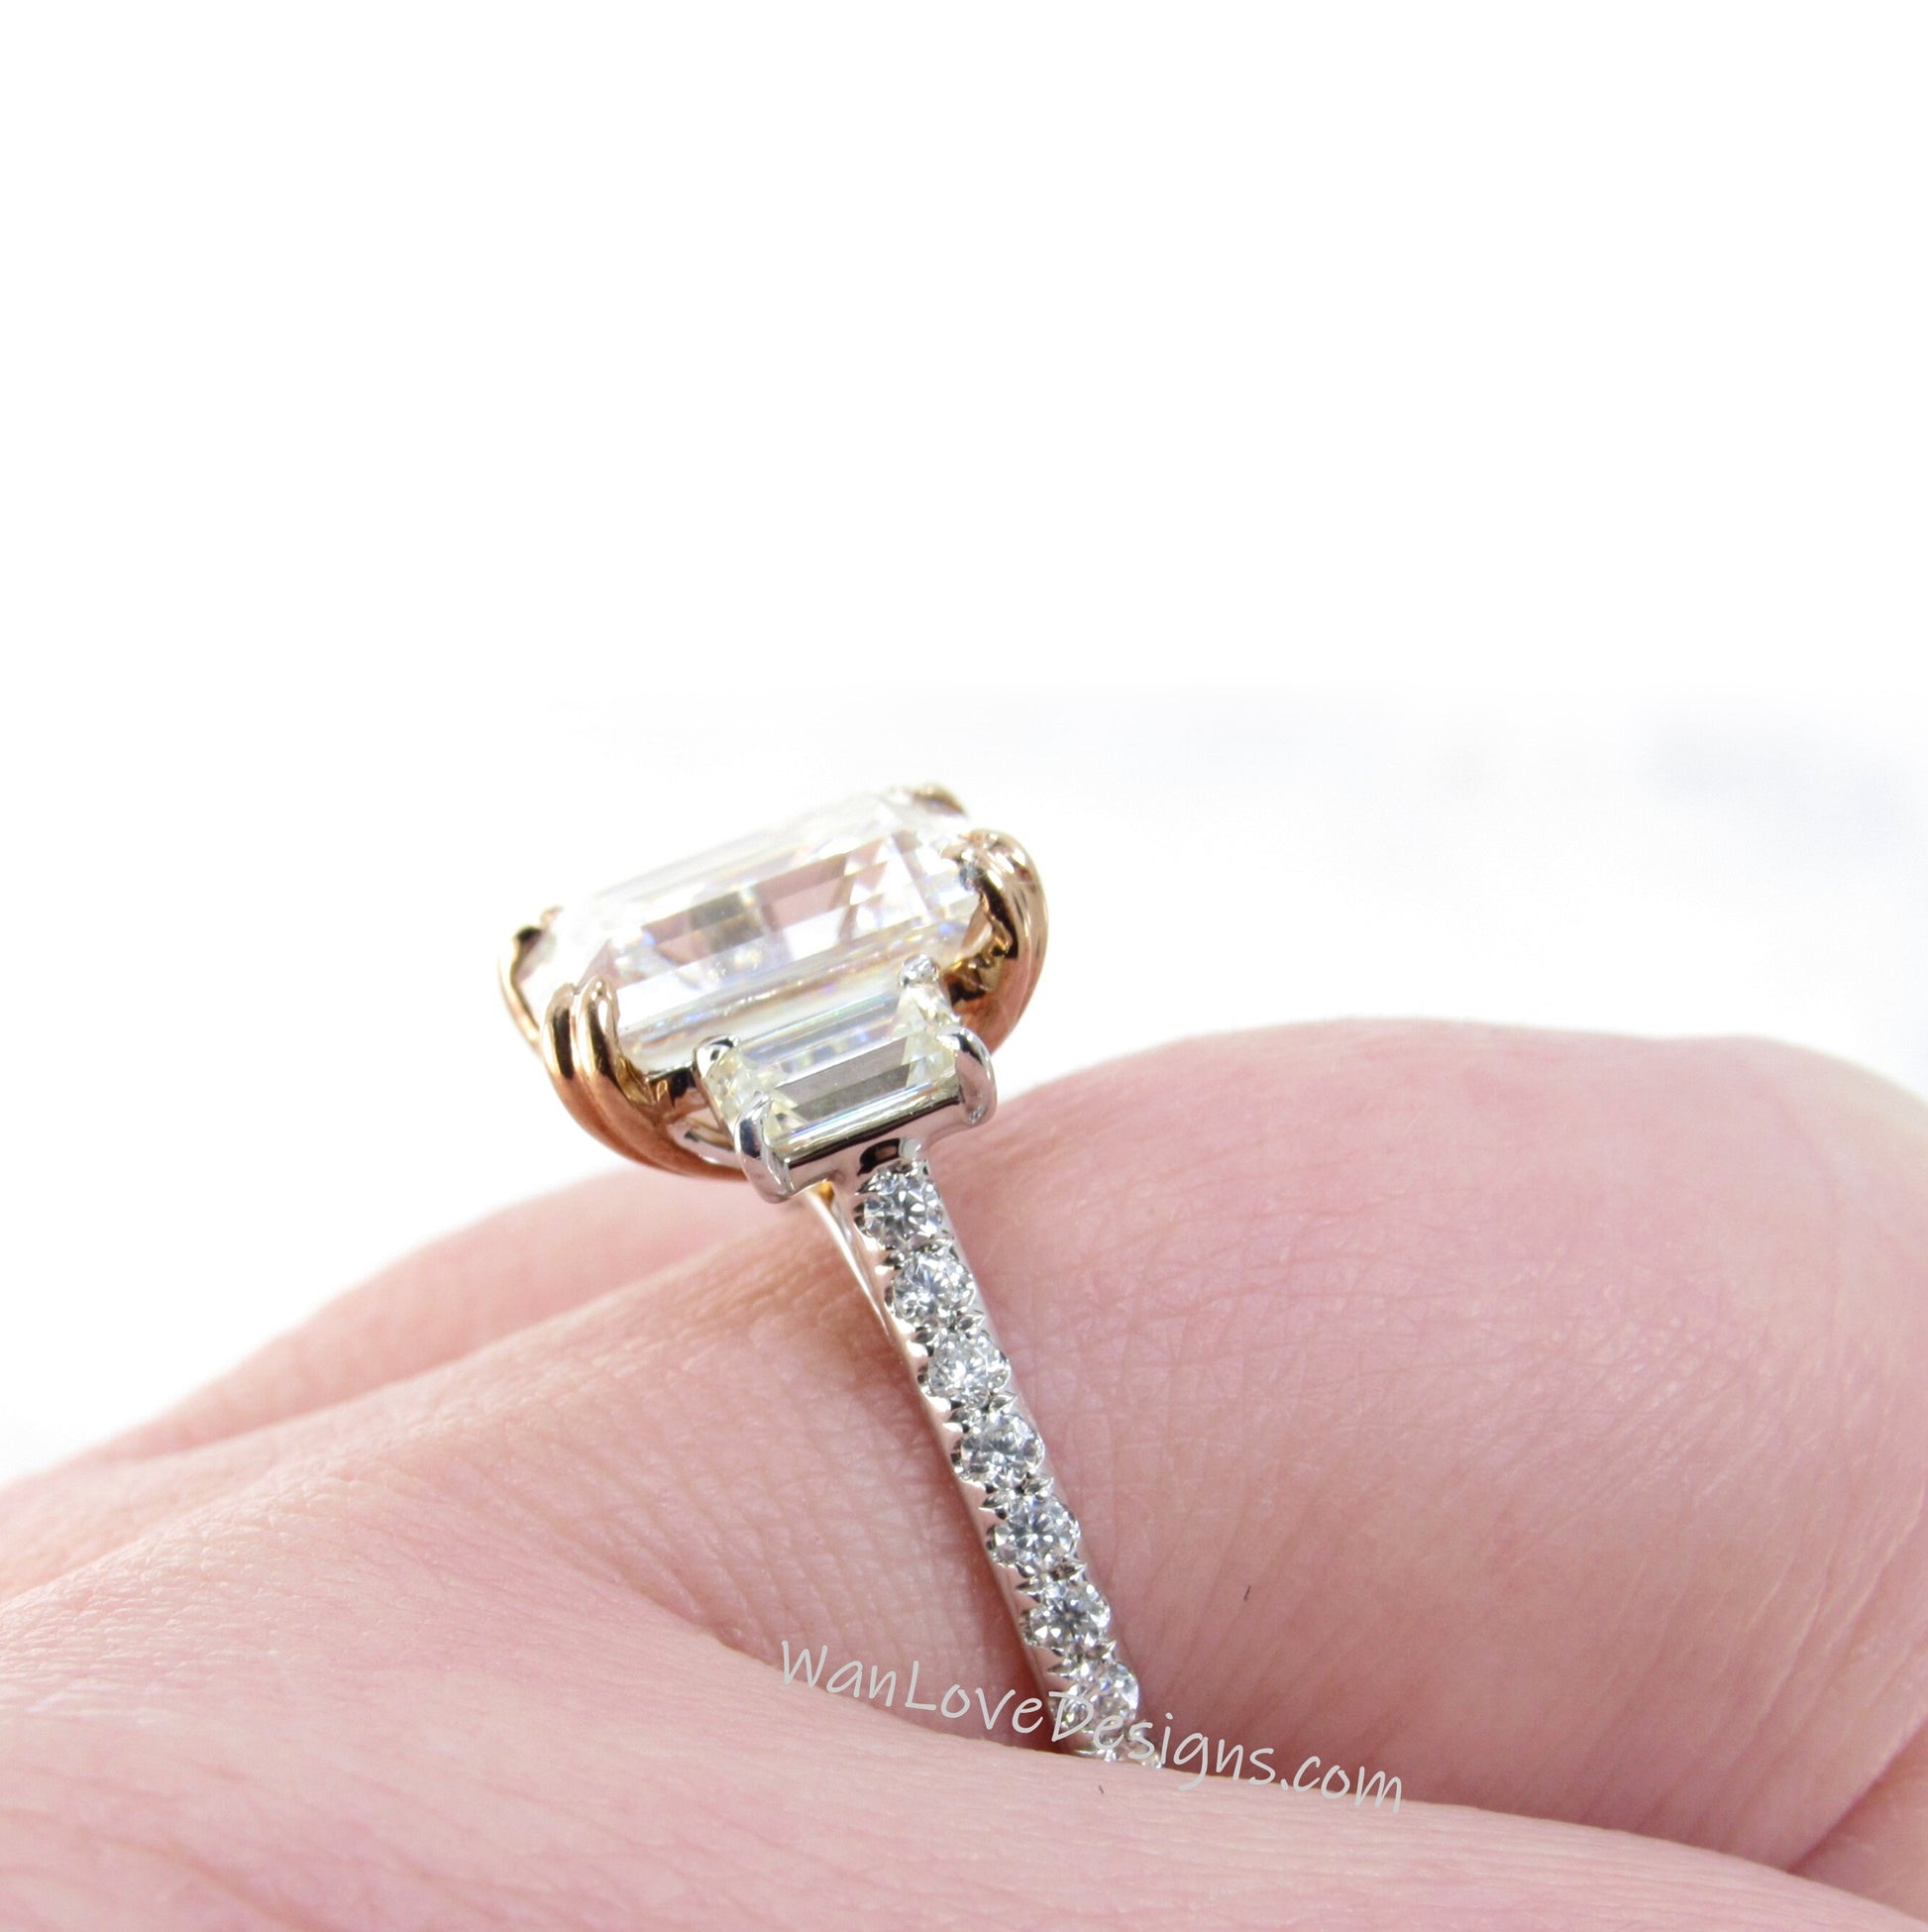 White Sapphire Diamond Emerald Baguette 3 gemstone Engagement Ring 4ct 10x8mm 14k White Yellow Rose Gold Platinum Custom Wedding Anniversary